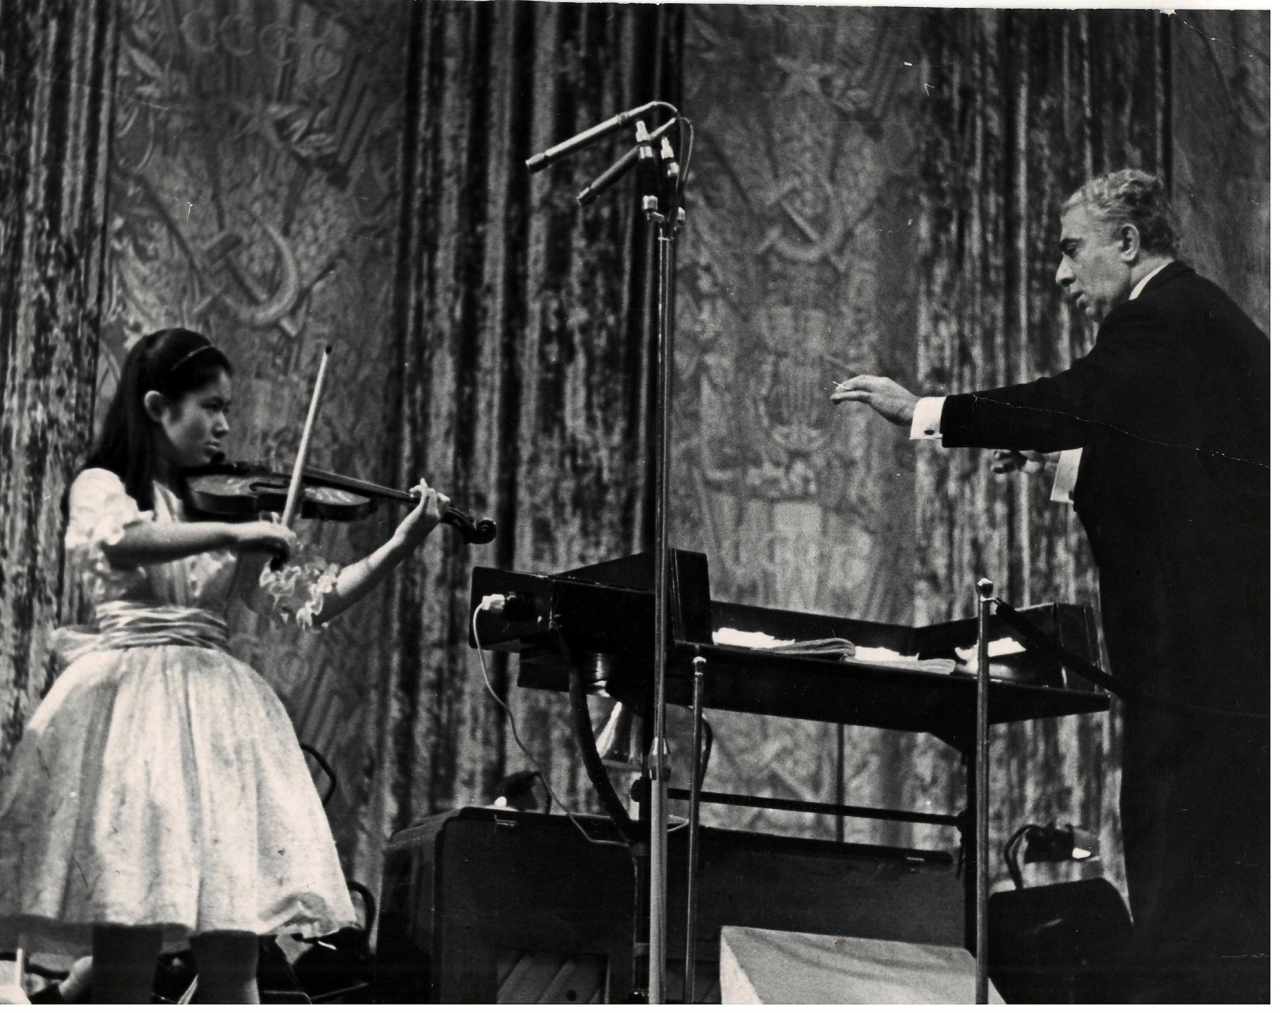 Լուսանկար. Ա. Խաչատրյանը պատանի ջութակահարուհի Յ.Սատոյի (Ճապոնիա) հետ, իր Ջութակի կոնցերտը նվագավարելիս